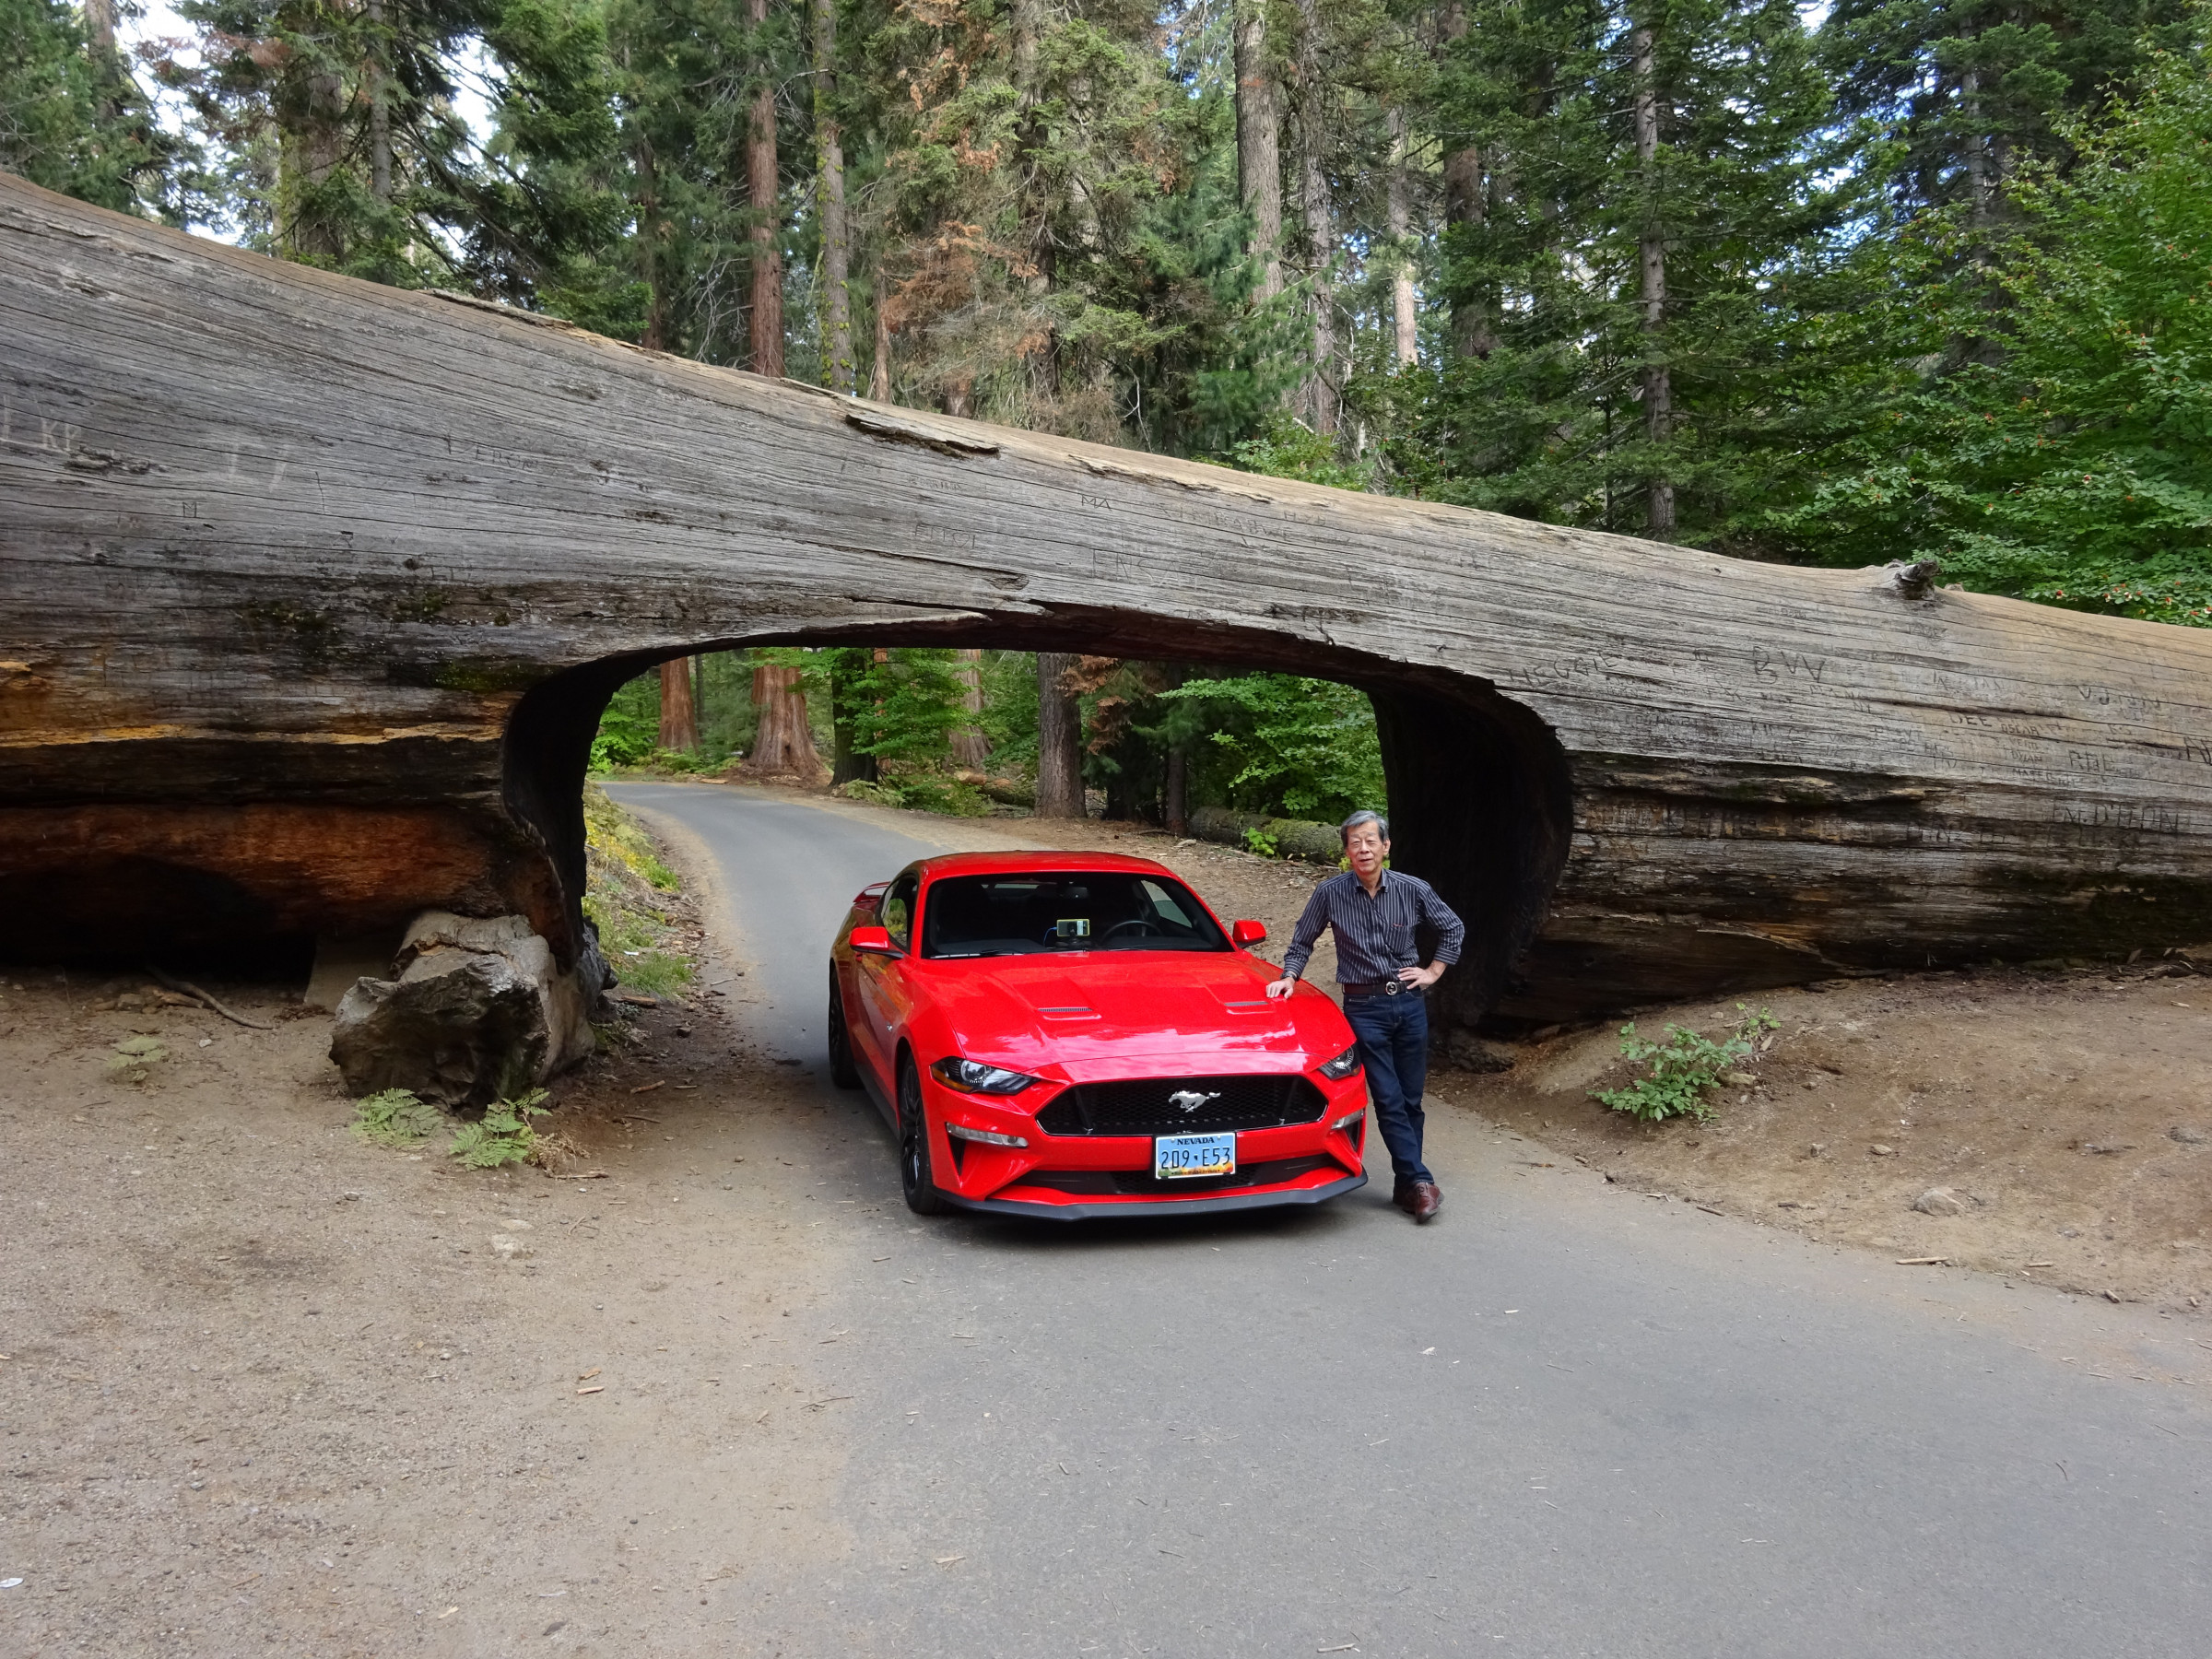 Sequoia NPの一コマ、幾多の時間をかけて作られてきた自然、数百年の知識で自然を解ったつもりで相手にしているのは人間のおごり?　もっと素直になろうよ